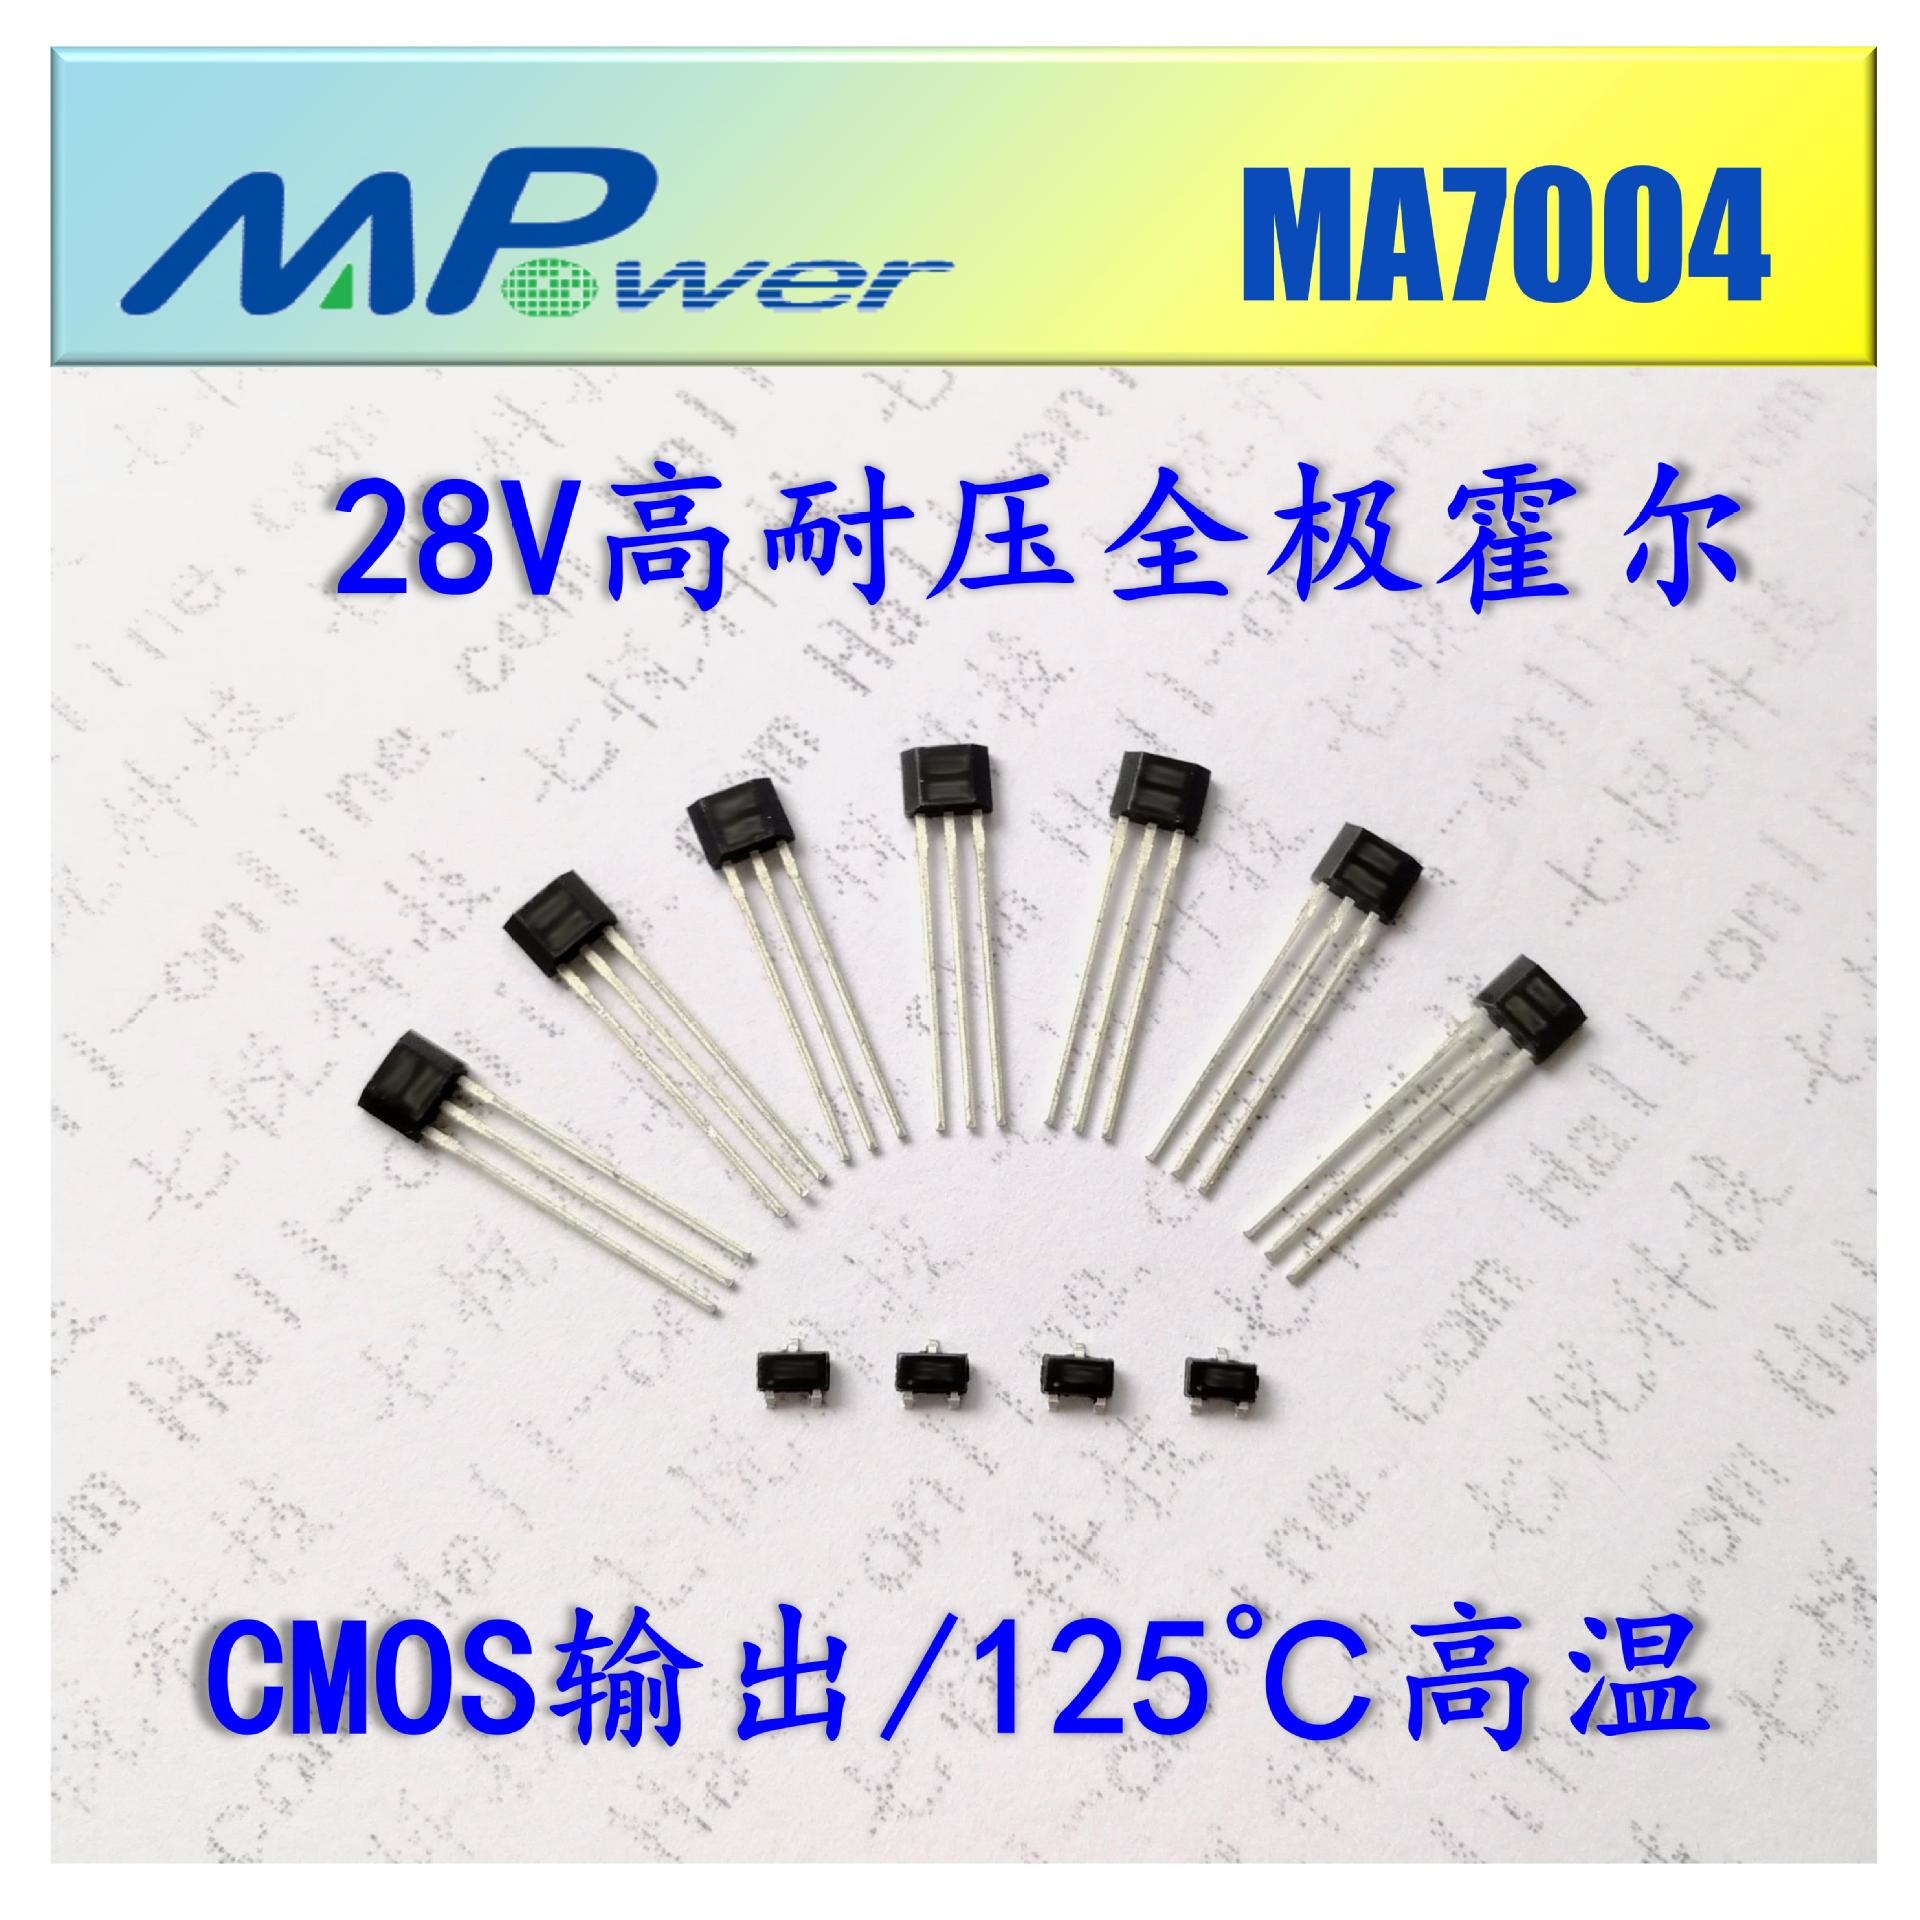 深圳现货供应 MA7004 血氧仪 制氧机 专用 低功耗测速 全极霍尔开关 霍尔传感器 霍尔元件